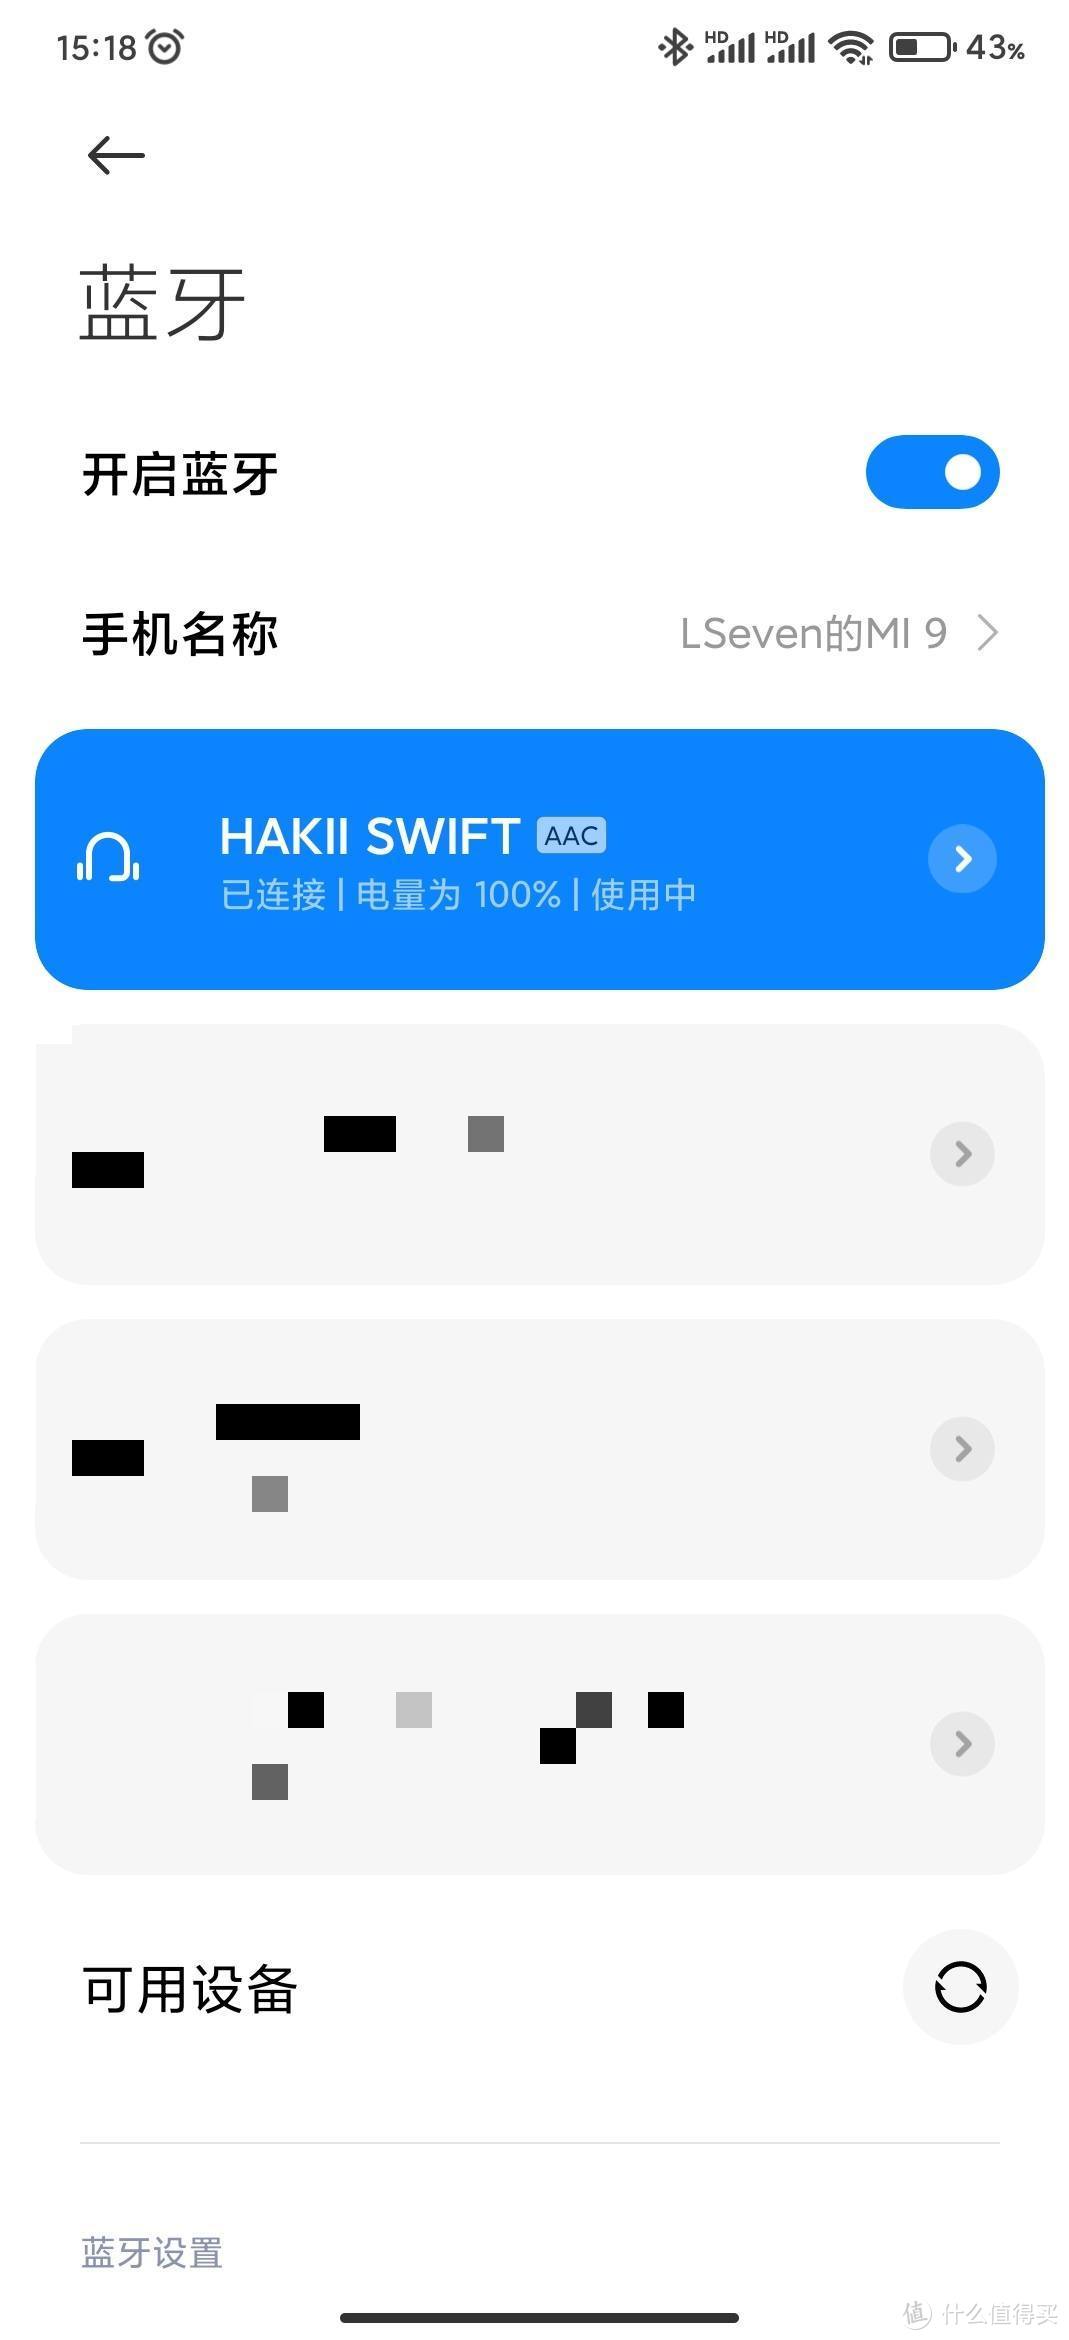 HAKII SWIFT 游侠——初体验